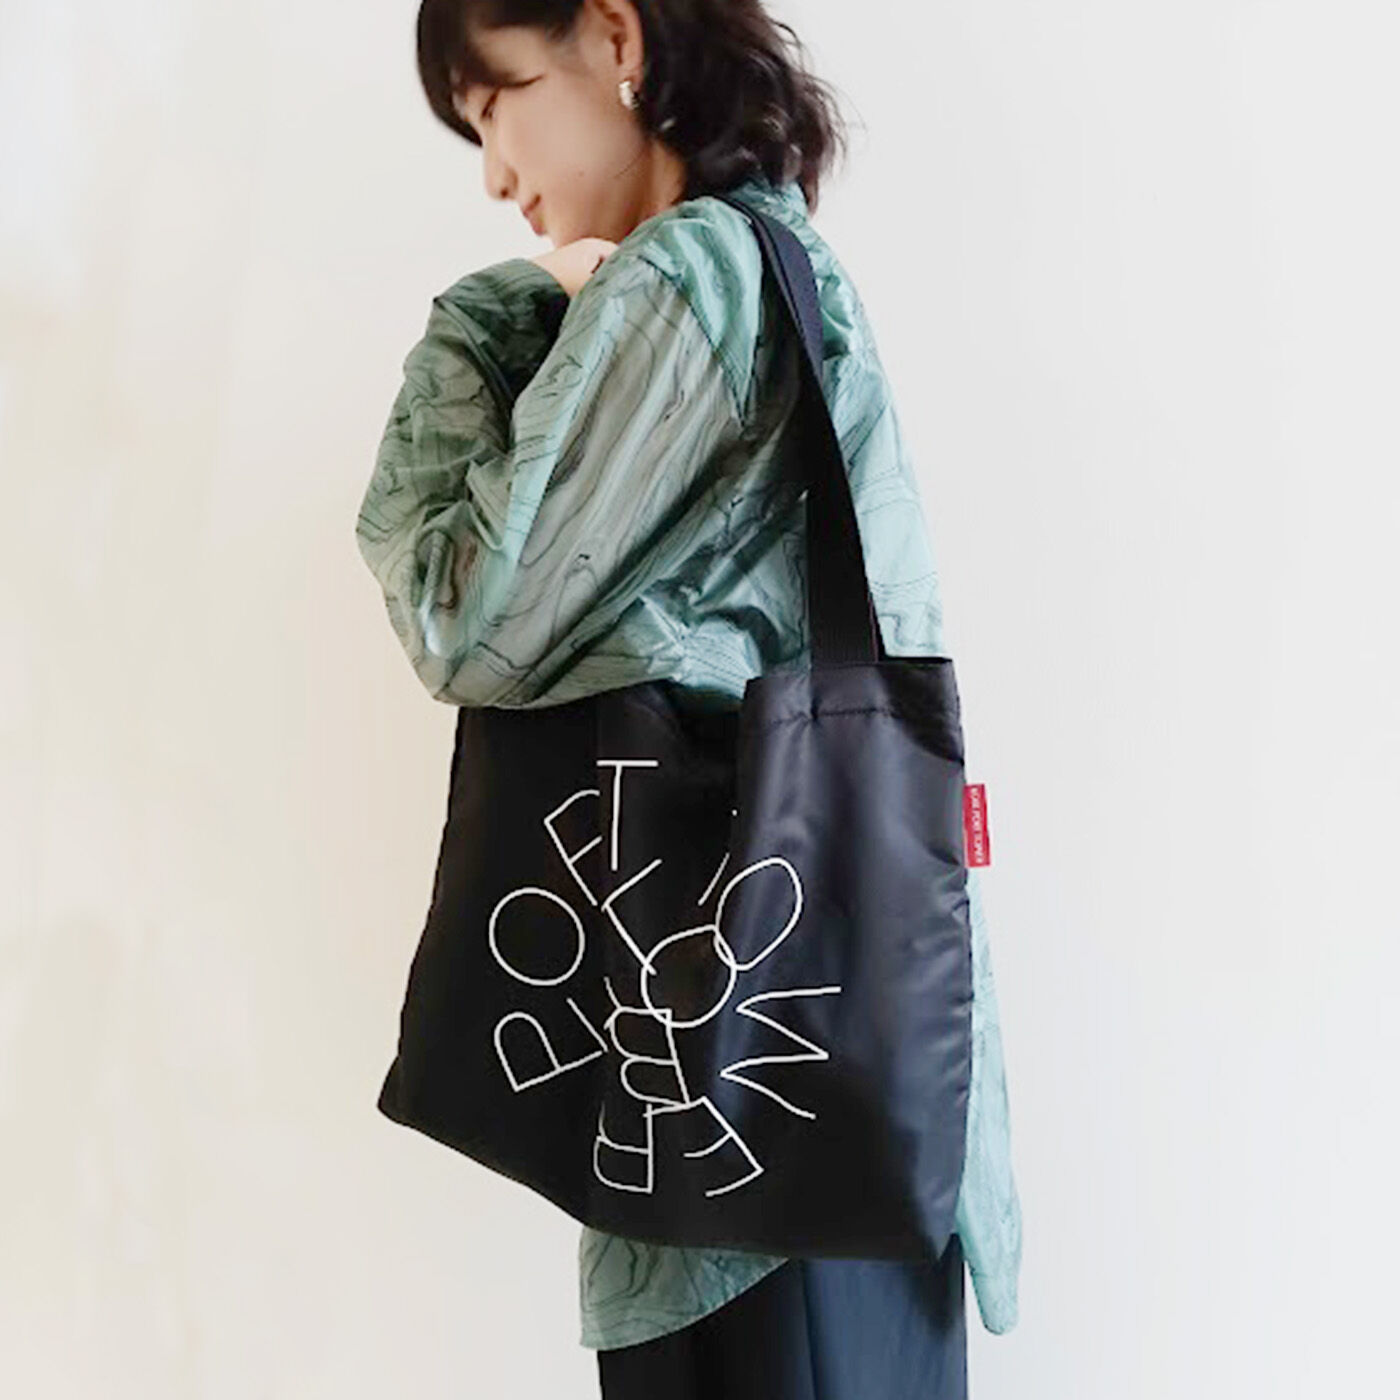 フェリシモコレクション|ブリリアンス神戸基金 KOBE PORT TOWER モディッシュバッグ〈Black〉|モダンでスタイリッシュな印象なので「モディッシュ」バッグと命名。是非日常のワンポイントコーデのお供に。